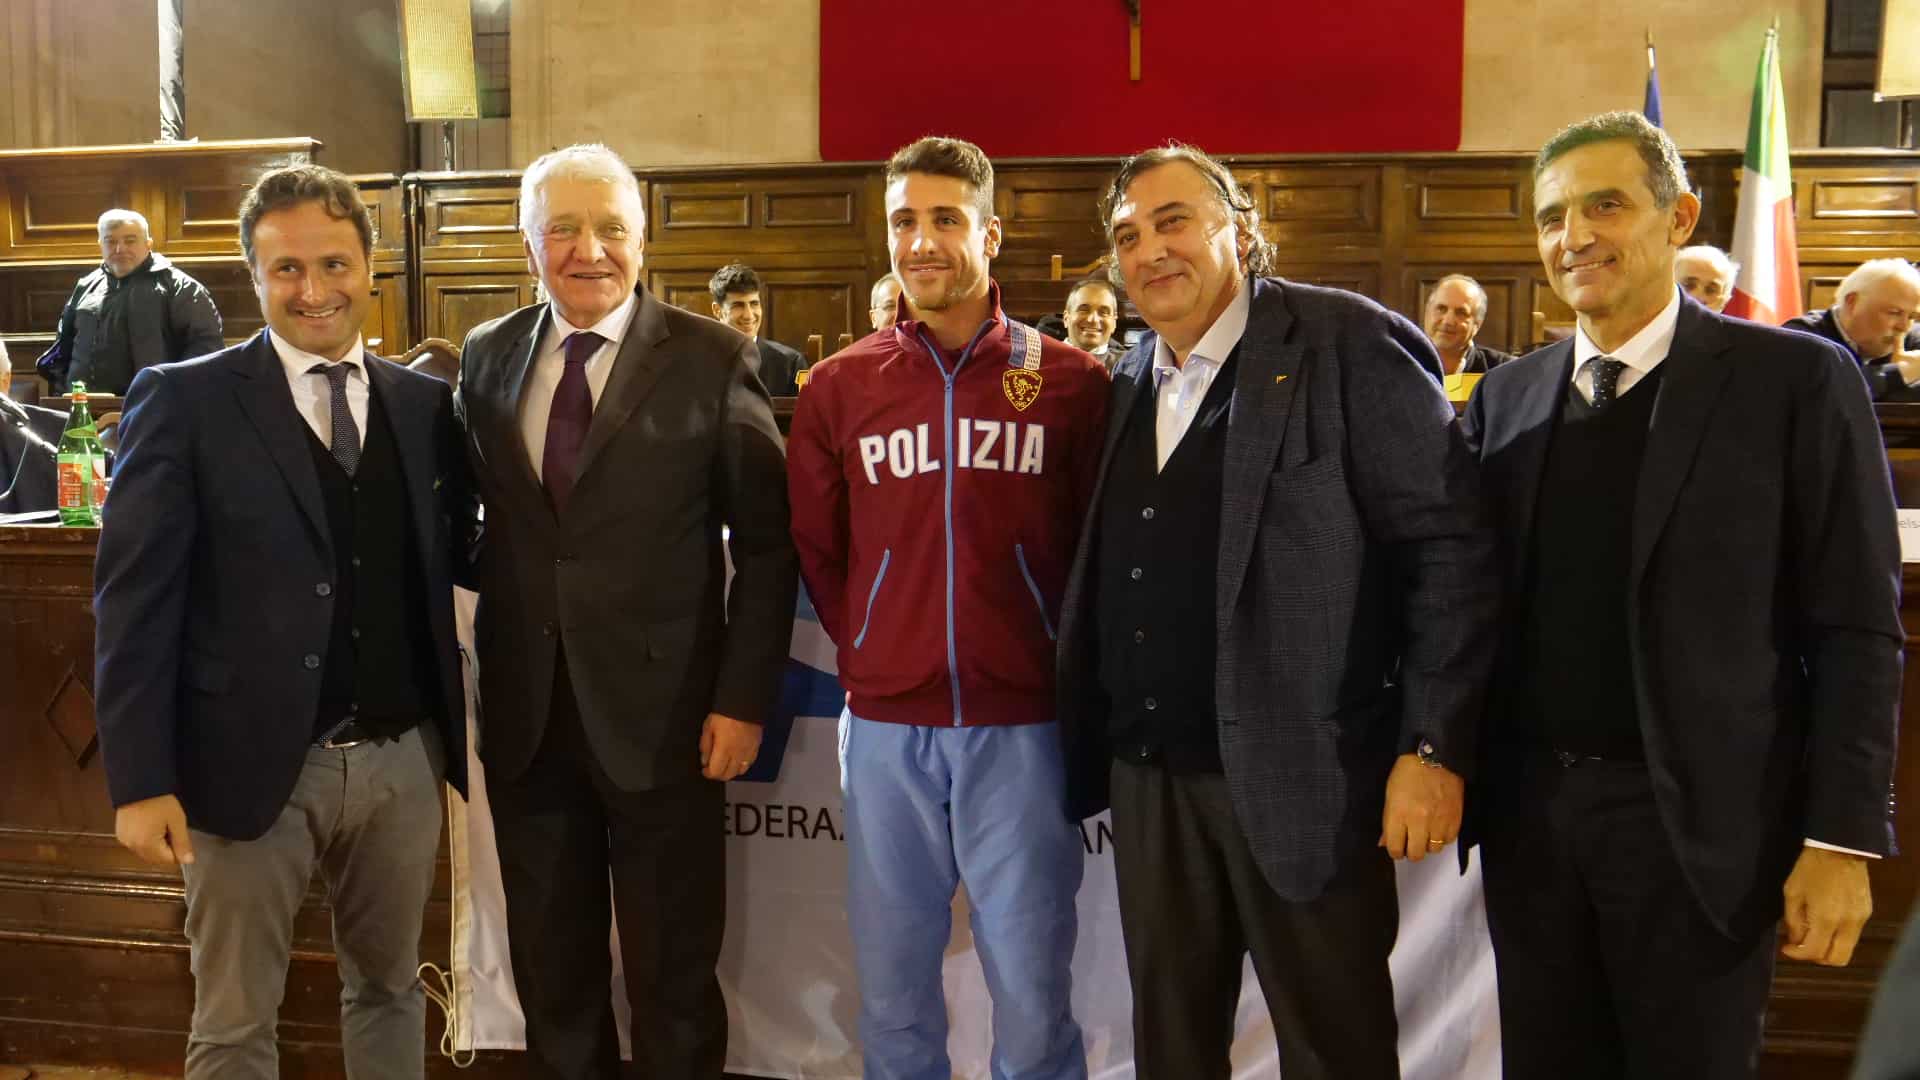 FIN Campania, i campioni del 2017 premiati al Maschio Angioino